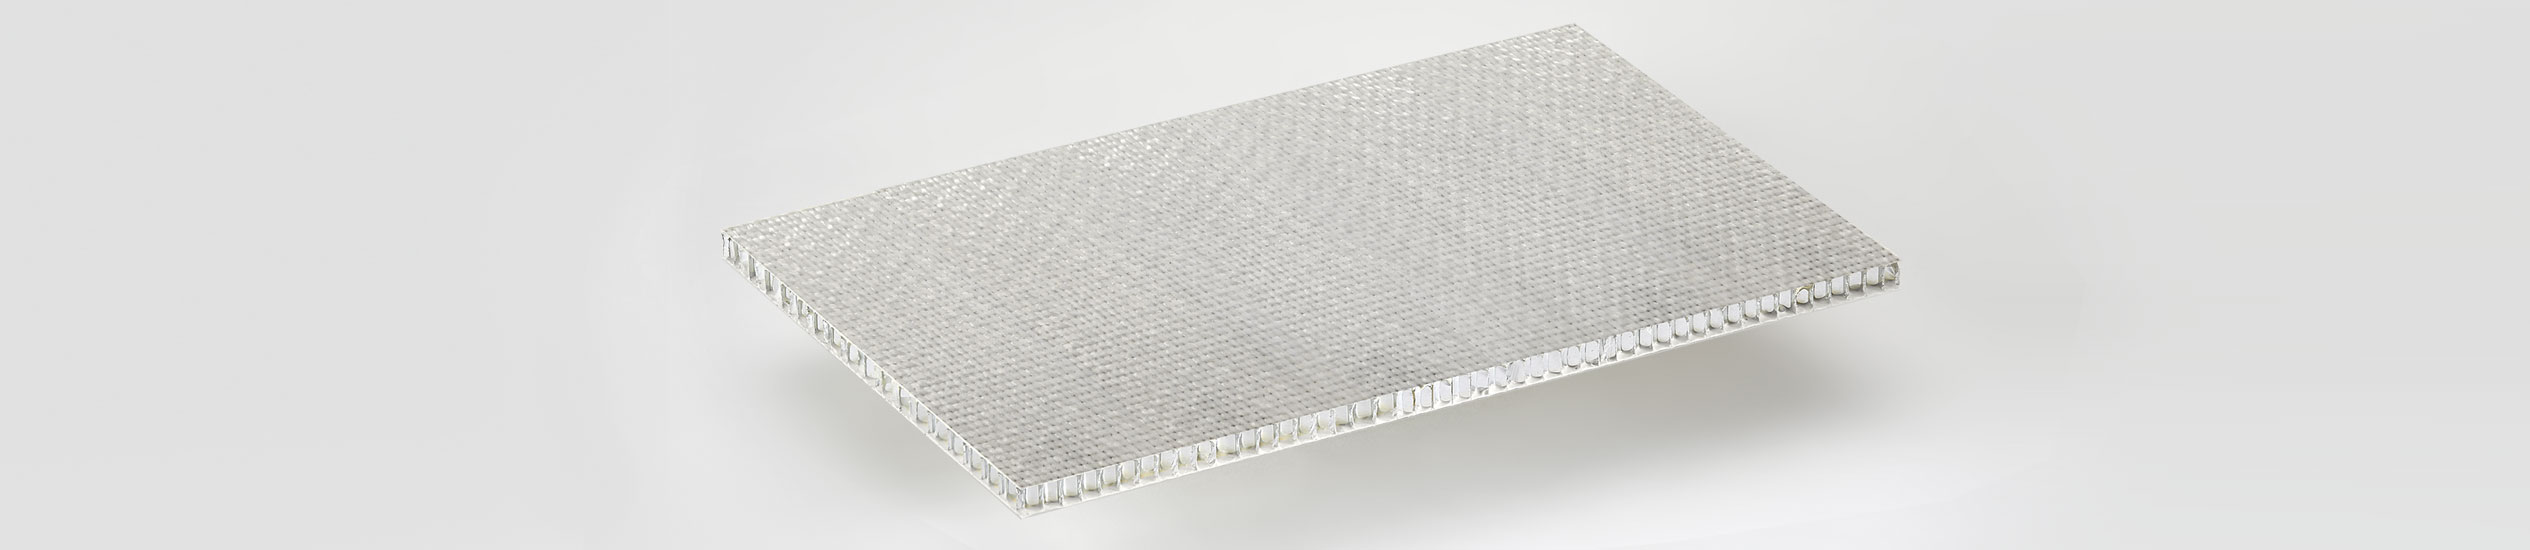 Sandwichplatten in Glassfiber und Epoxy für Mosaiken und Natursteine. ALUSTEP 500 SL